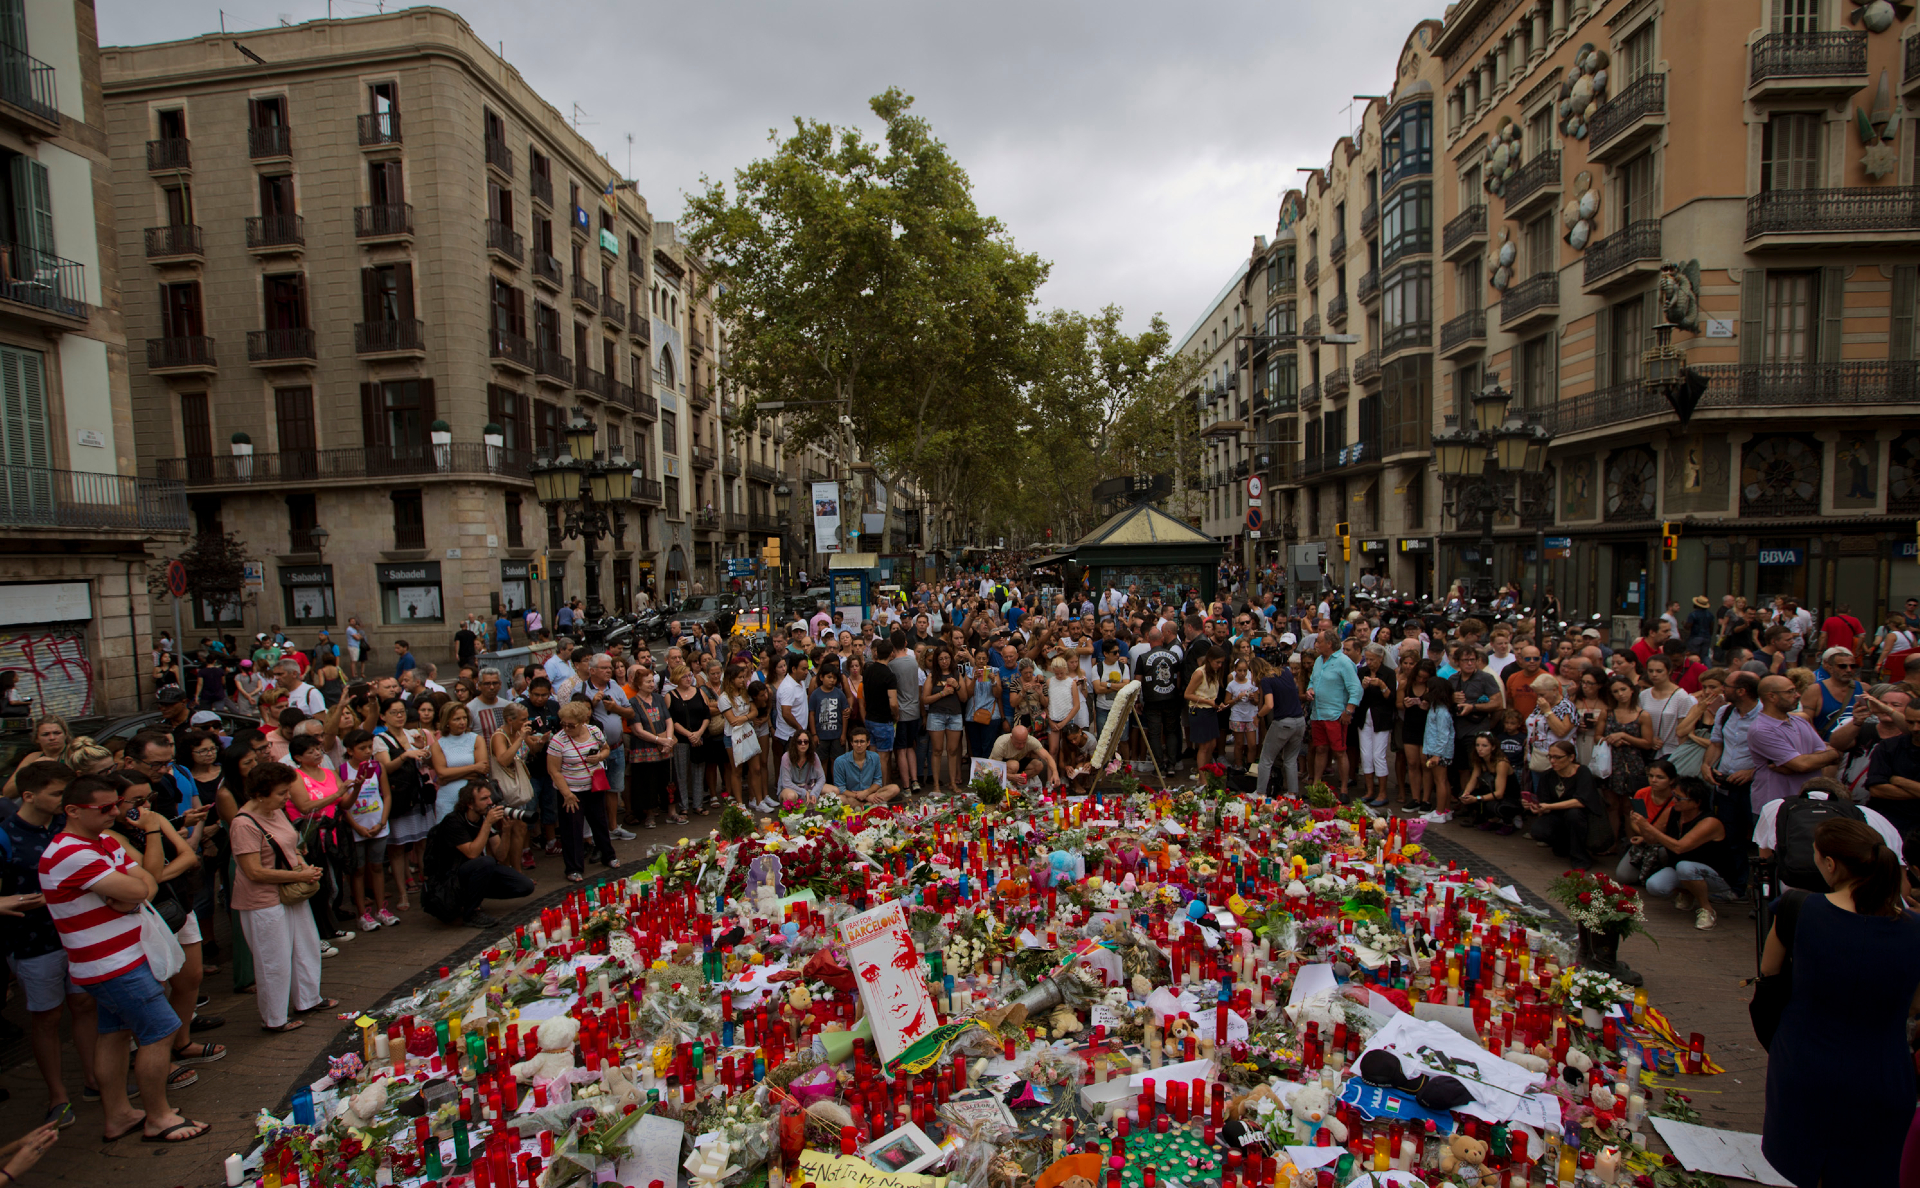 Акция памяти на бульваре Рамбла в честь погибших в результате теракта в августе прошлого года